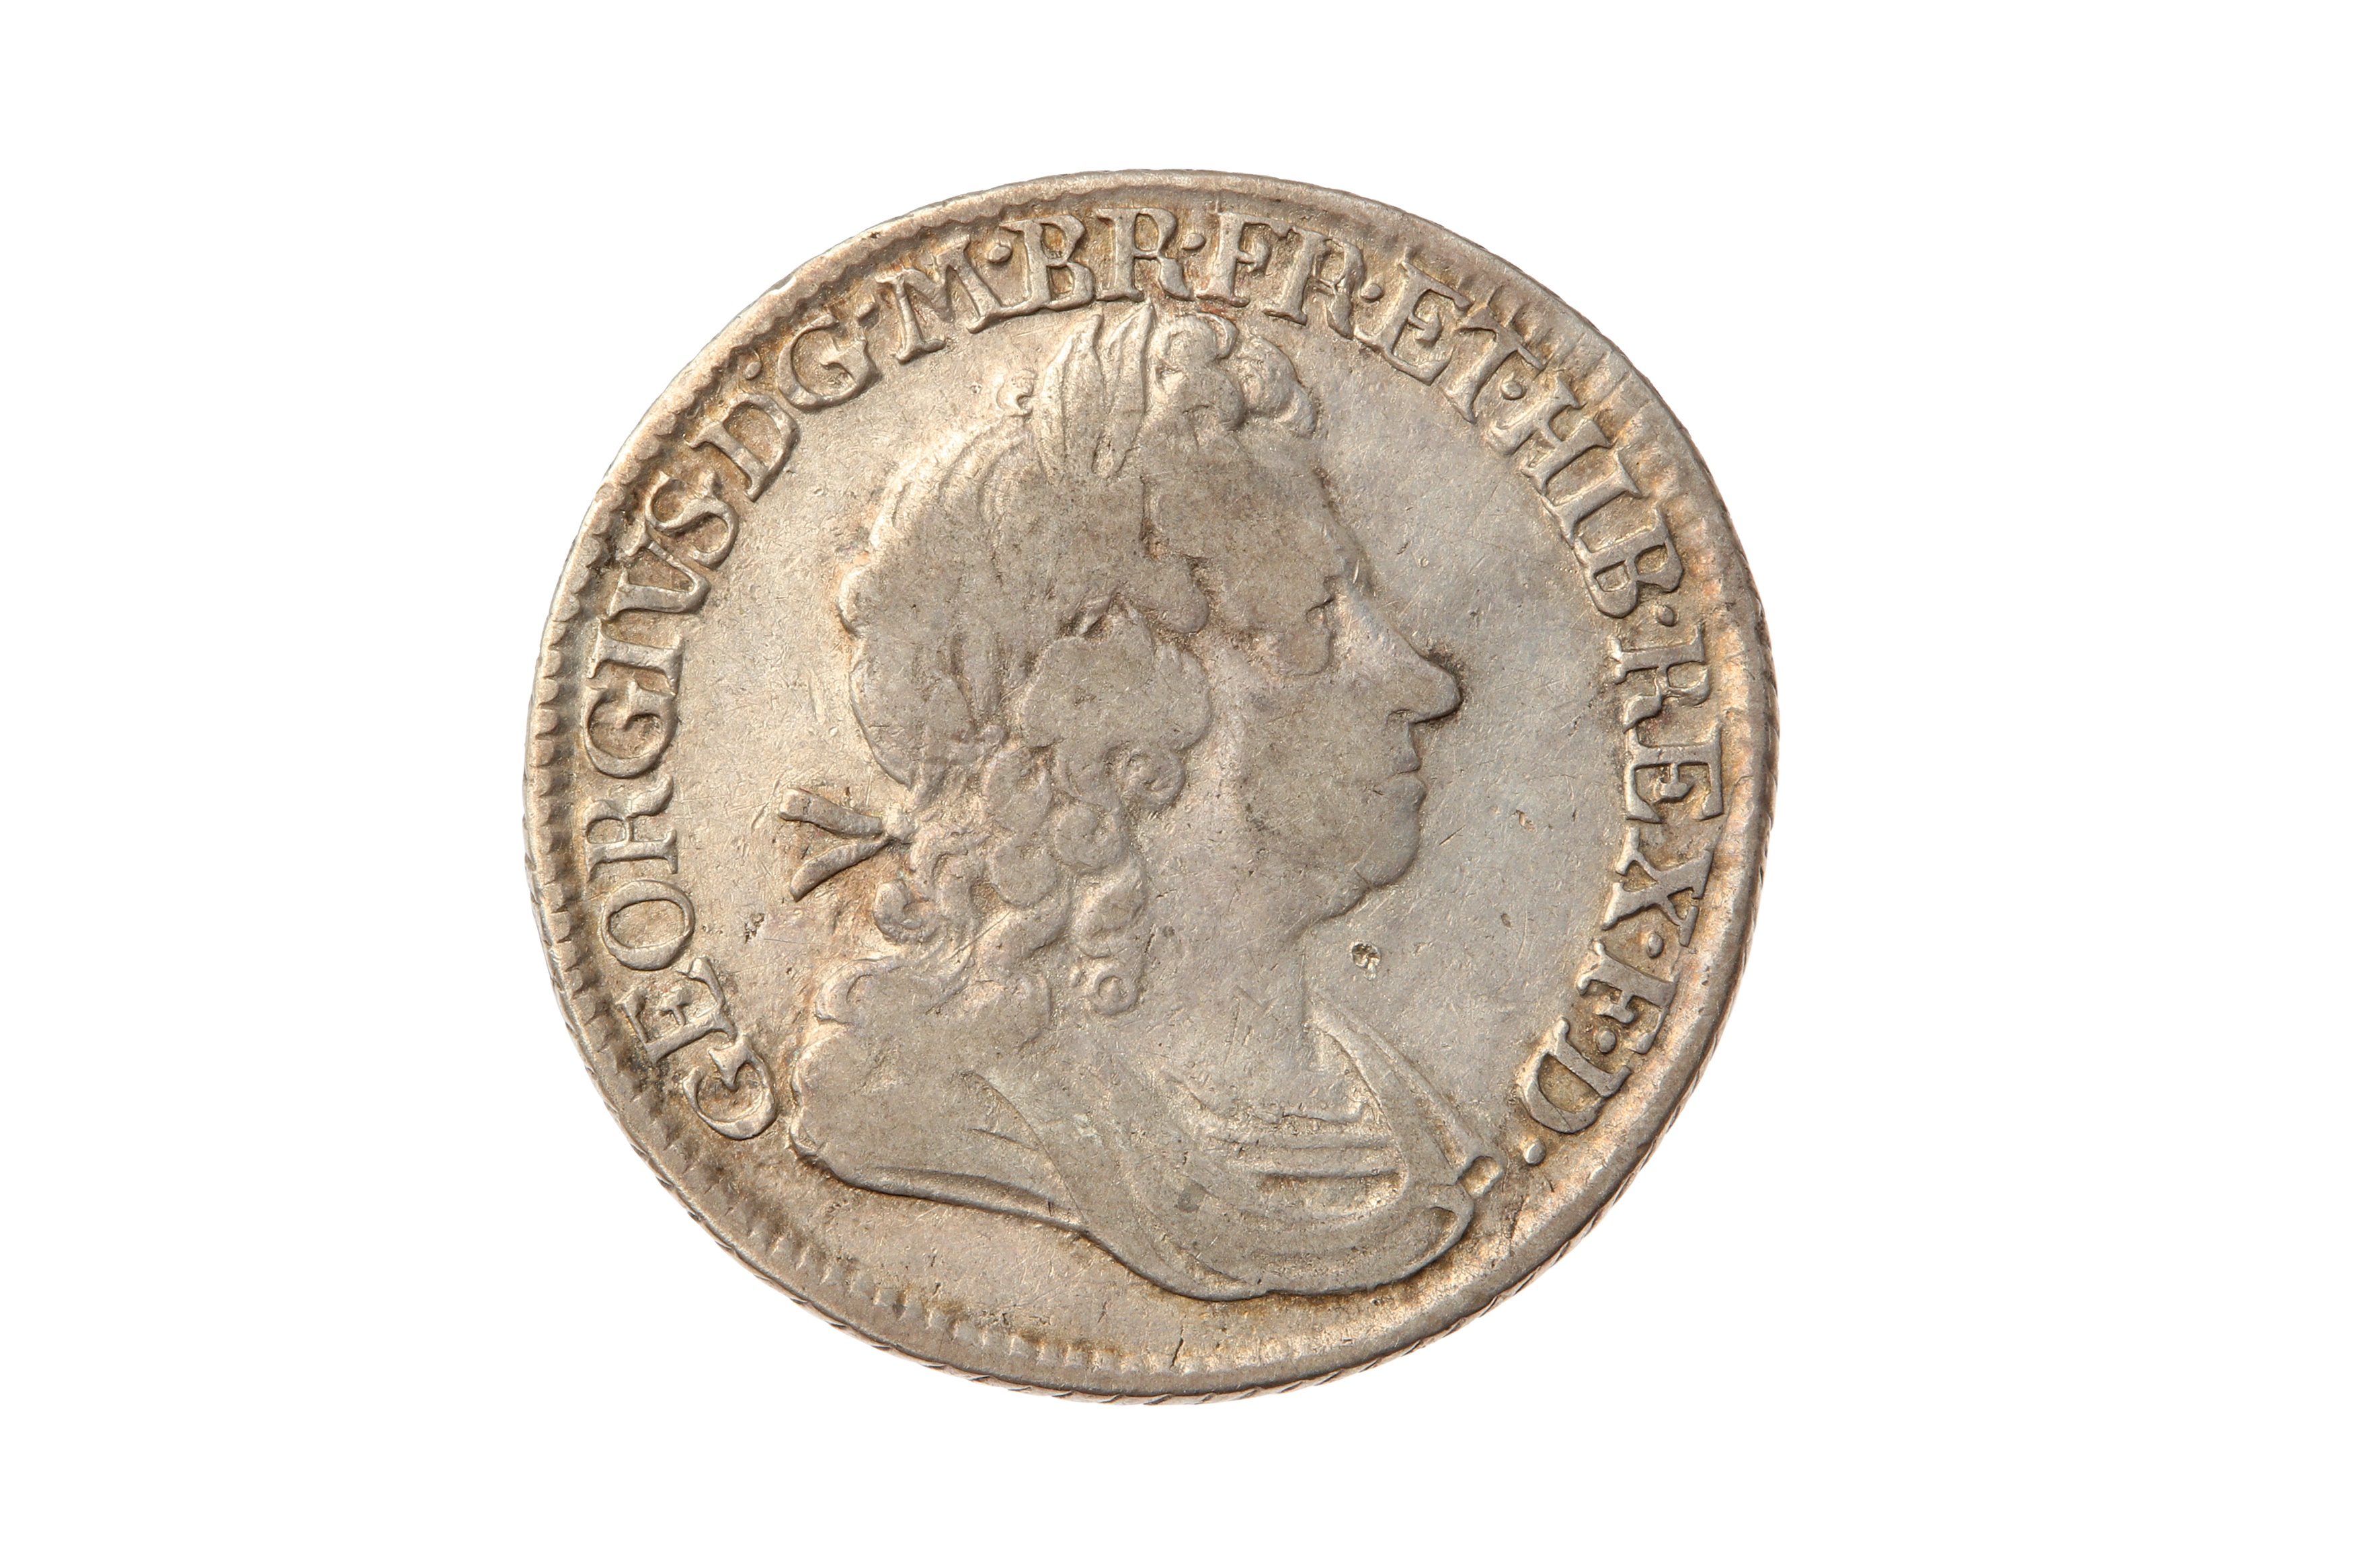 GEORGE I (1714 - 1727), 1720 SHILLING, LARGE 0.